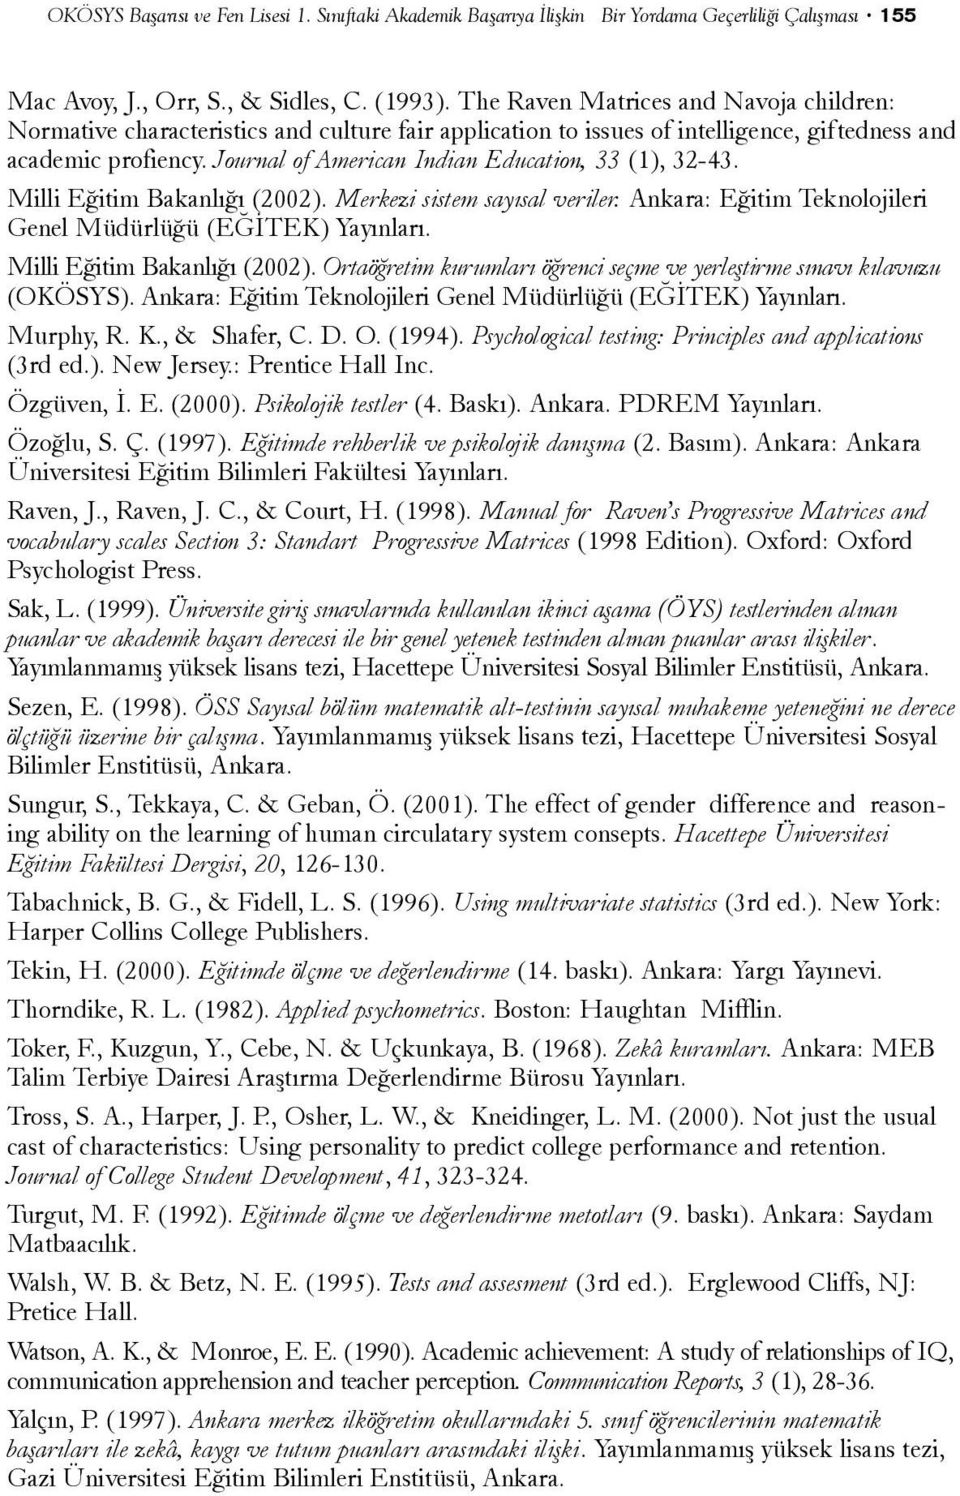 Journal of American Indian Education, 33 (1), 32-43. Milli Eðitim Bakanlýðý (2002). Merkezi sistem sayýsal veriler. Ankara: Eðitim Teknolojileri Genel Müdürlüðü (EÐÝTEK) Yayýnlarý.